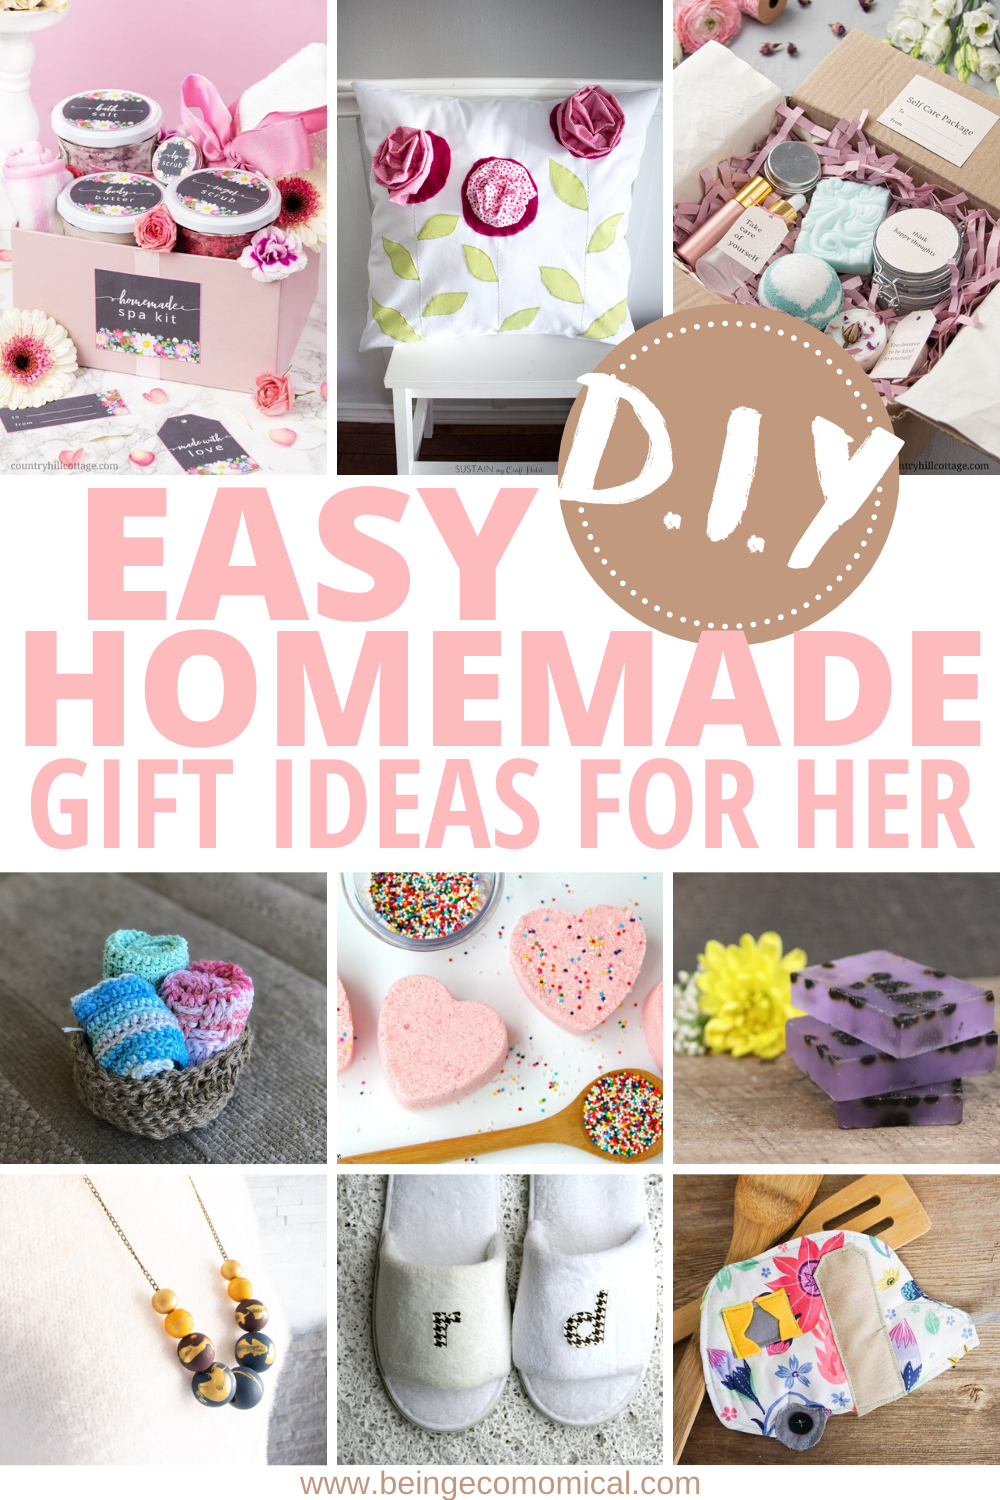 More than 40 Simple Handmade Gift Ideas - The Polka Dot Chair